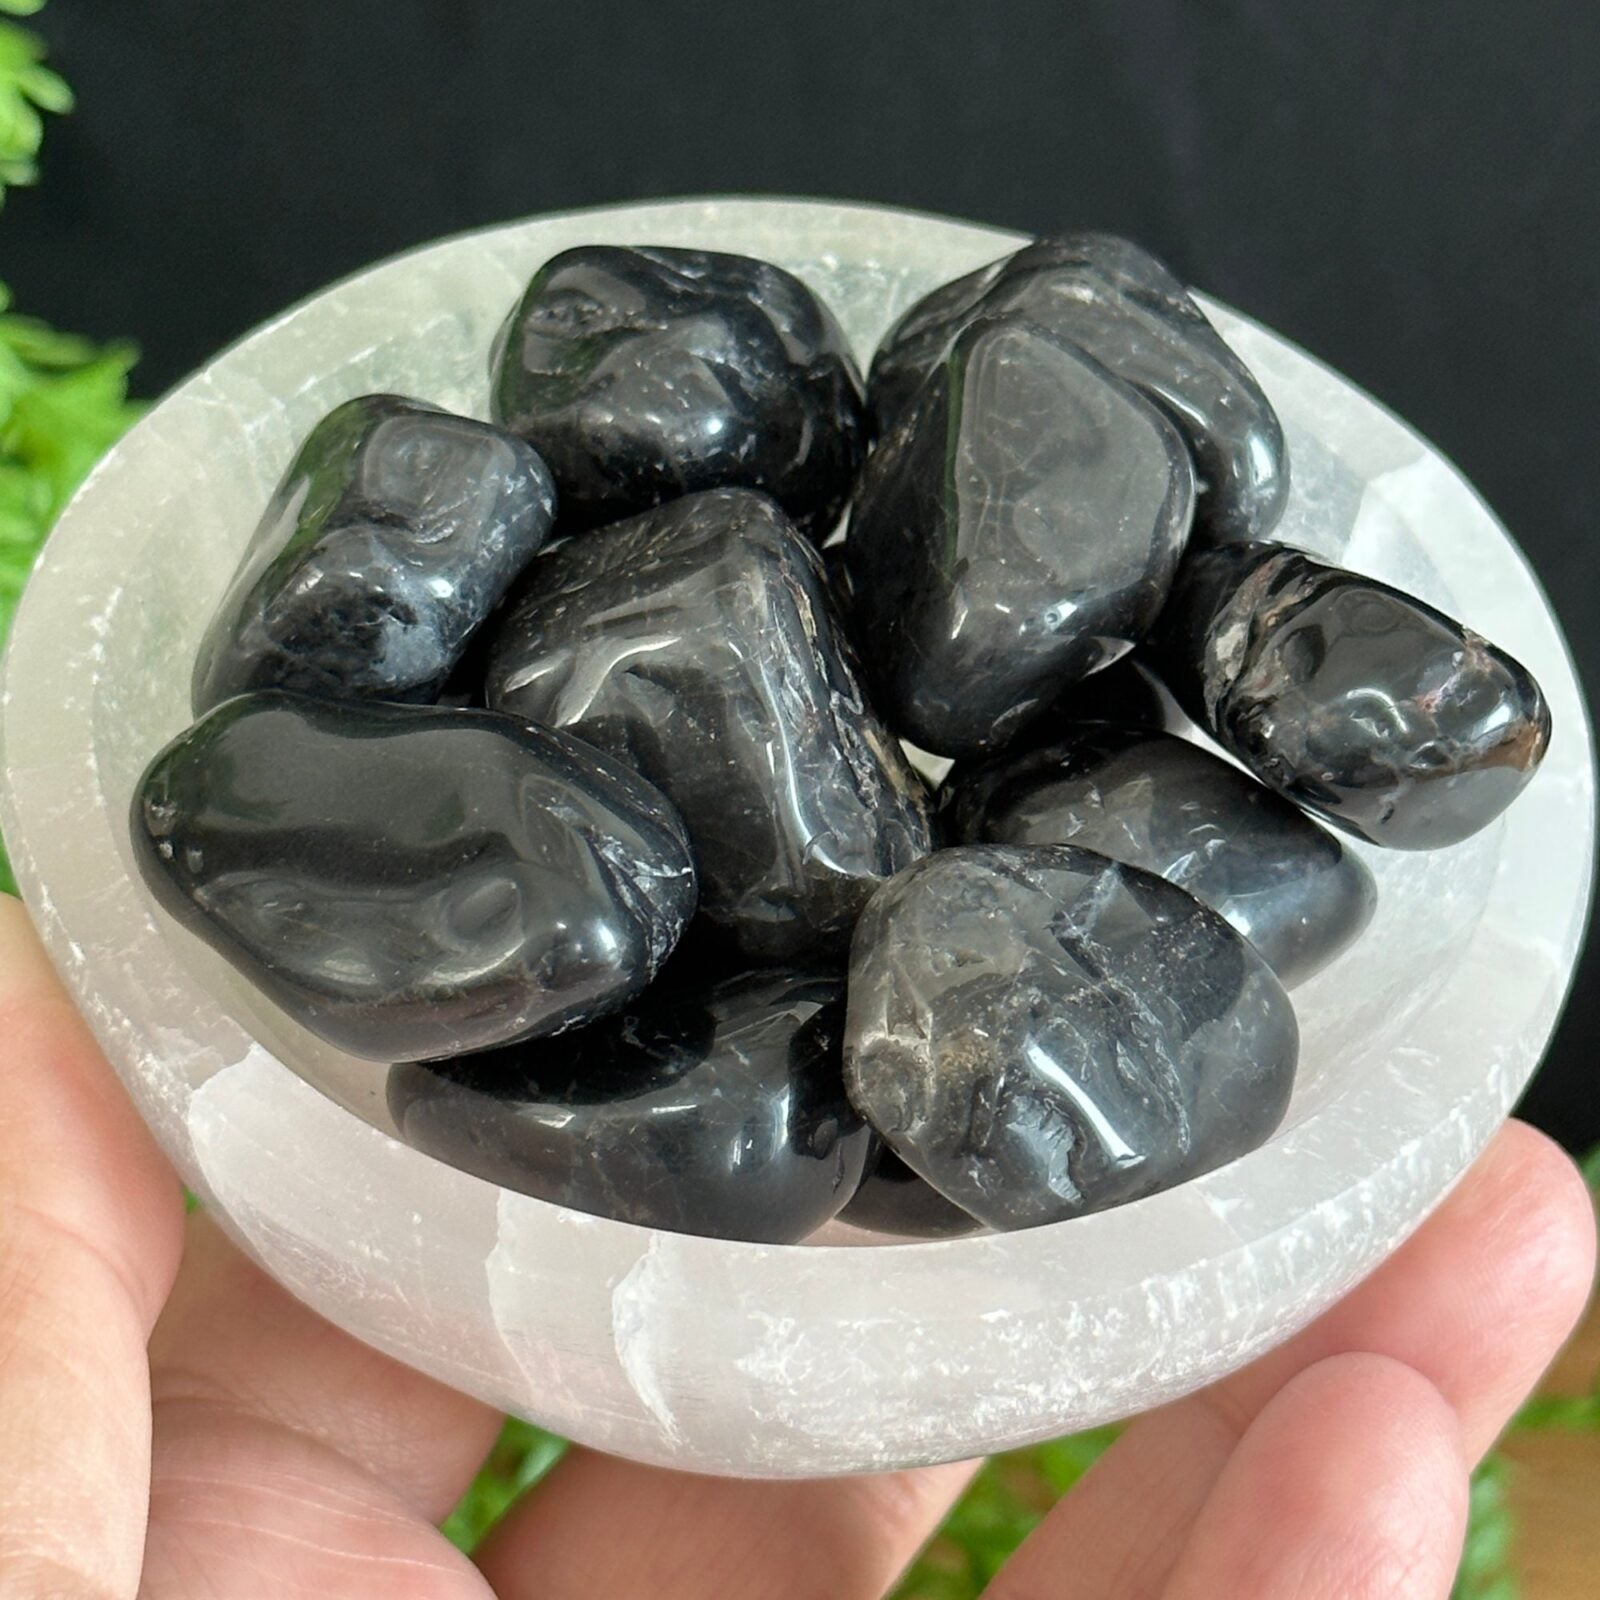 Black Onyx tumble stones,